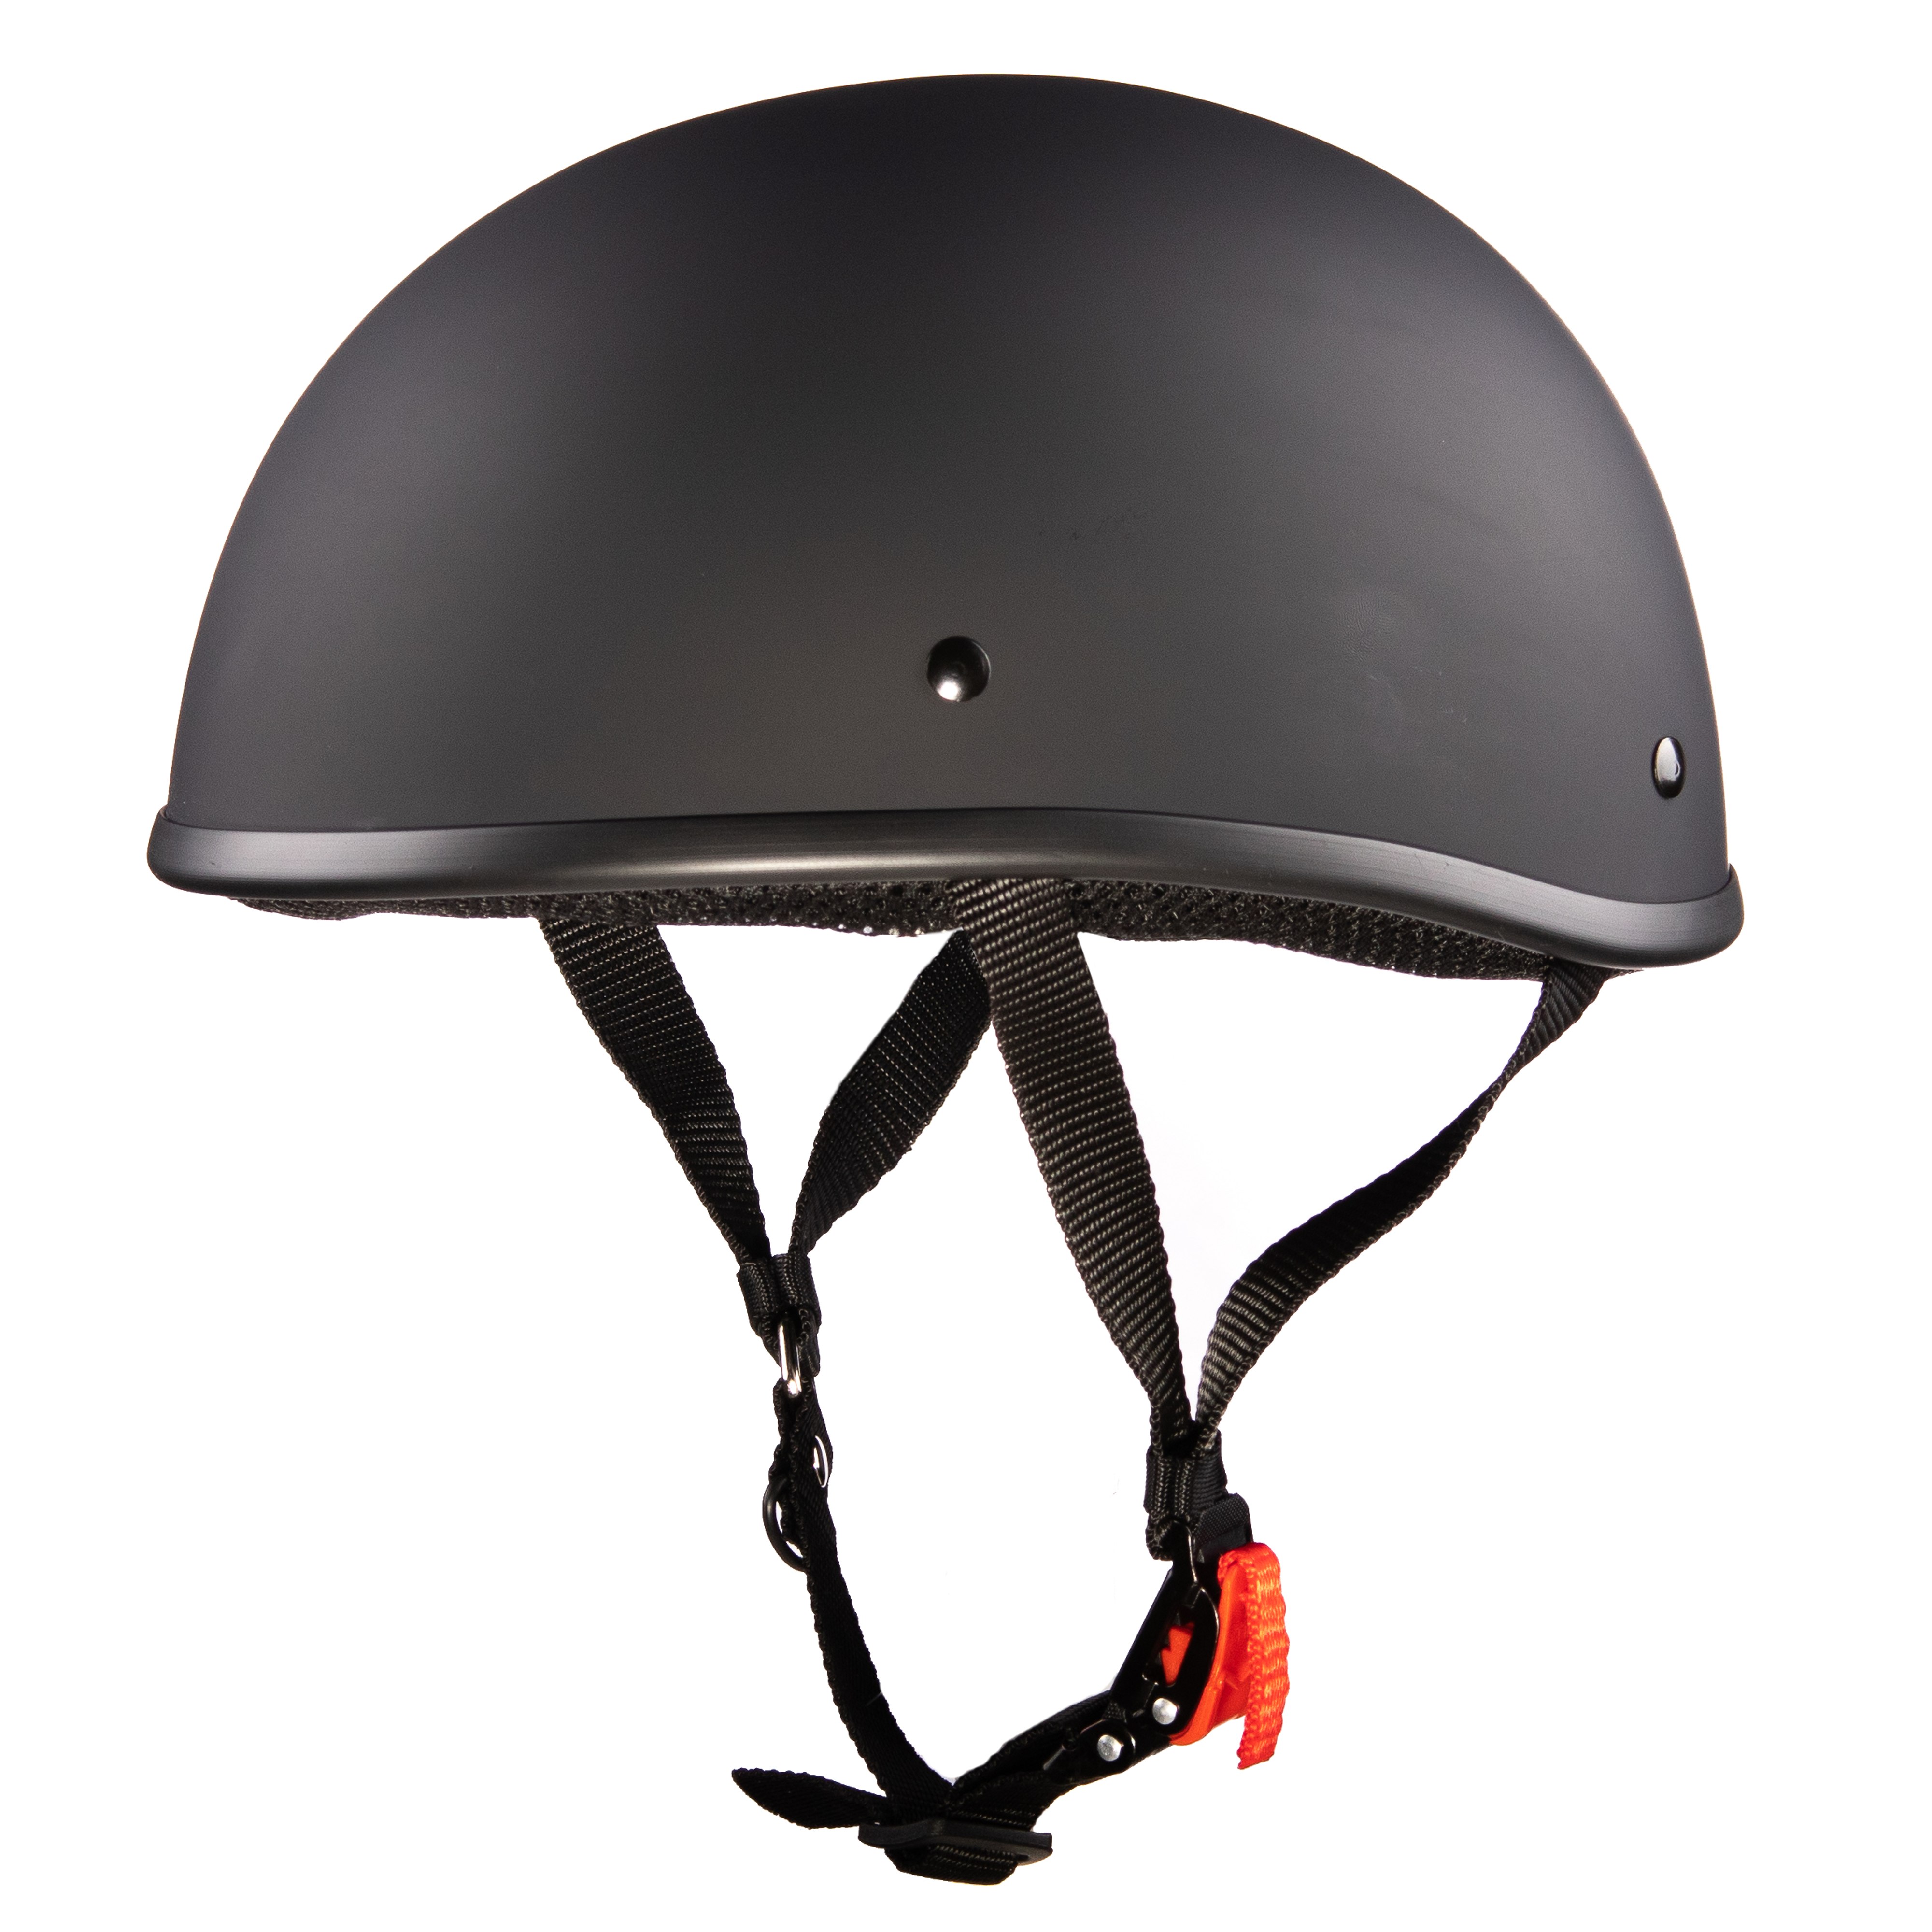 Motorcycle Half Helmets - RevZilla